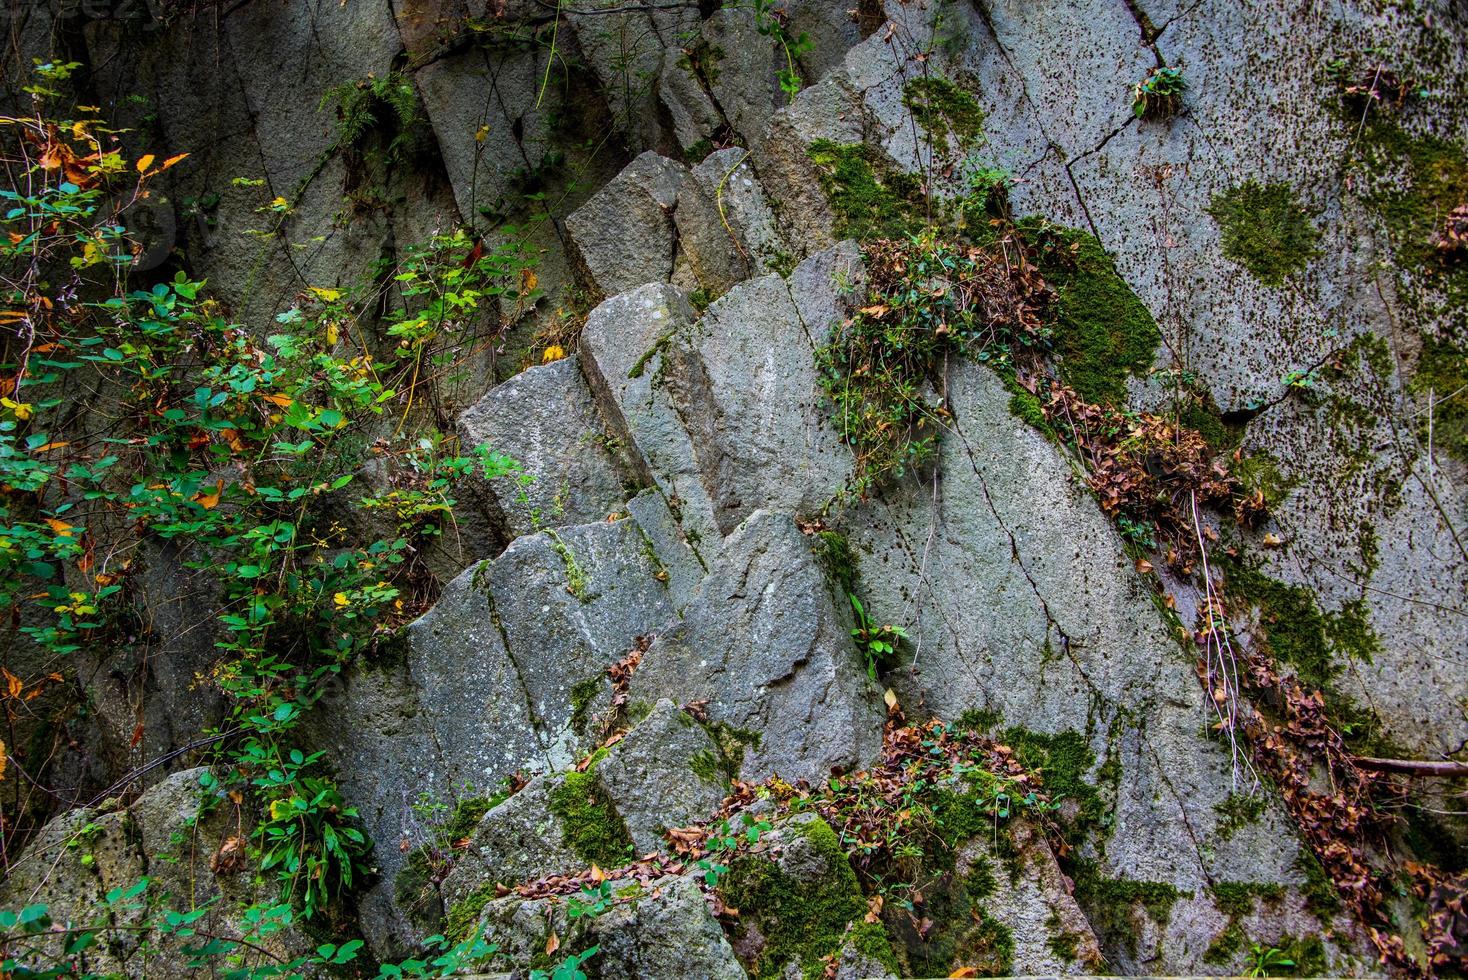 Cava di riolite sul monte cinto, a cinto euganeo, padova, italia foto